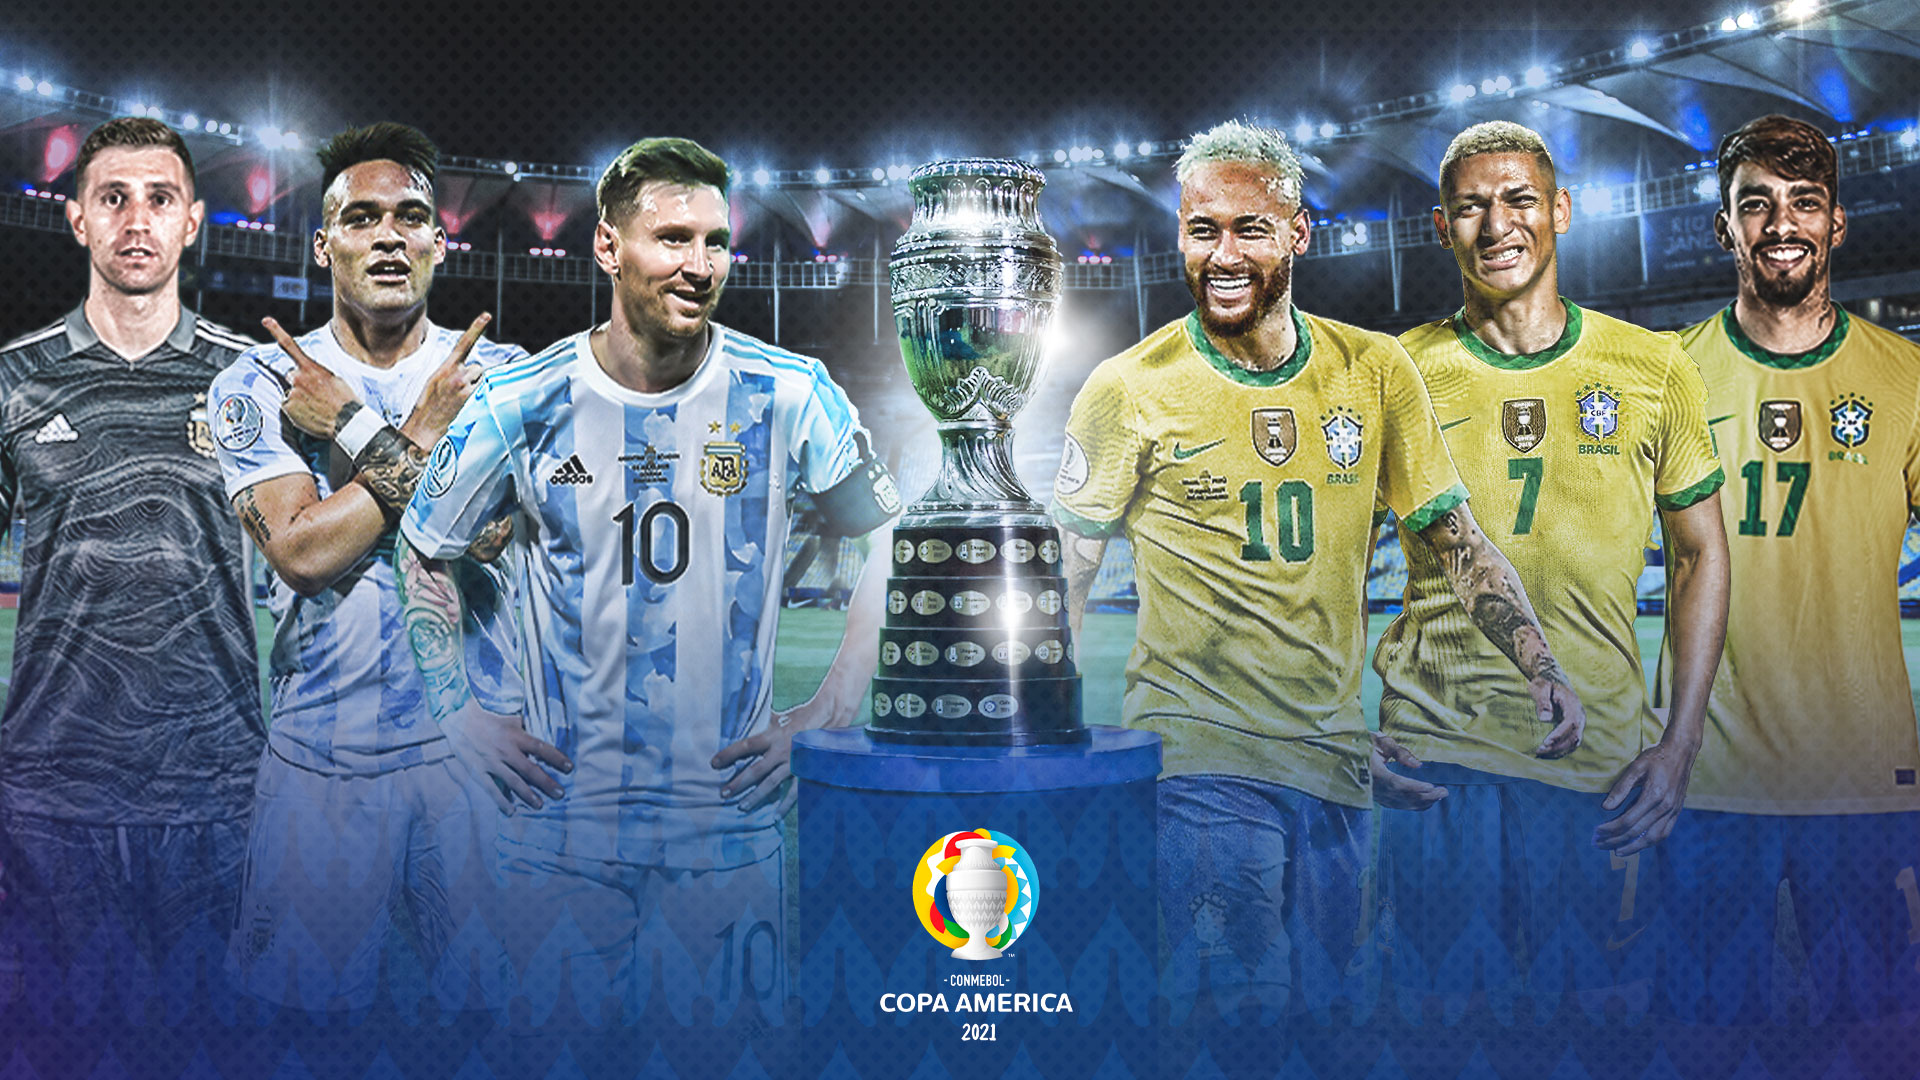 Chào mừng đến với giải đấu bóng đá Copa America đầy kịch tính và phấn khích! Hãy cùng xem những đội bóng hàng đầu Nam Mỹ cạnh tranh với nhau để giành được chiếc cúp danh giá nhất. Những pha bóng nhanh, những cú sút ko thể đỡ đc, và những bàn thắng đẹp mắt chắc chắn sẽ làm bạn rực cháy trong từng phút giây trên sân cỏ.